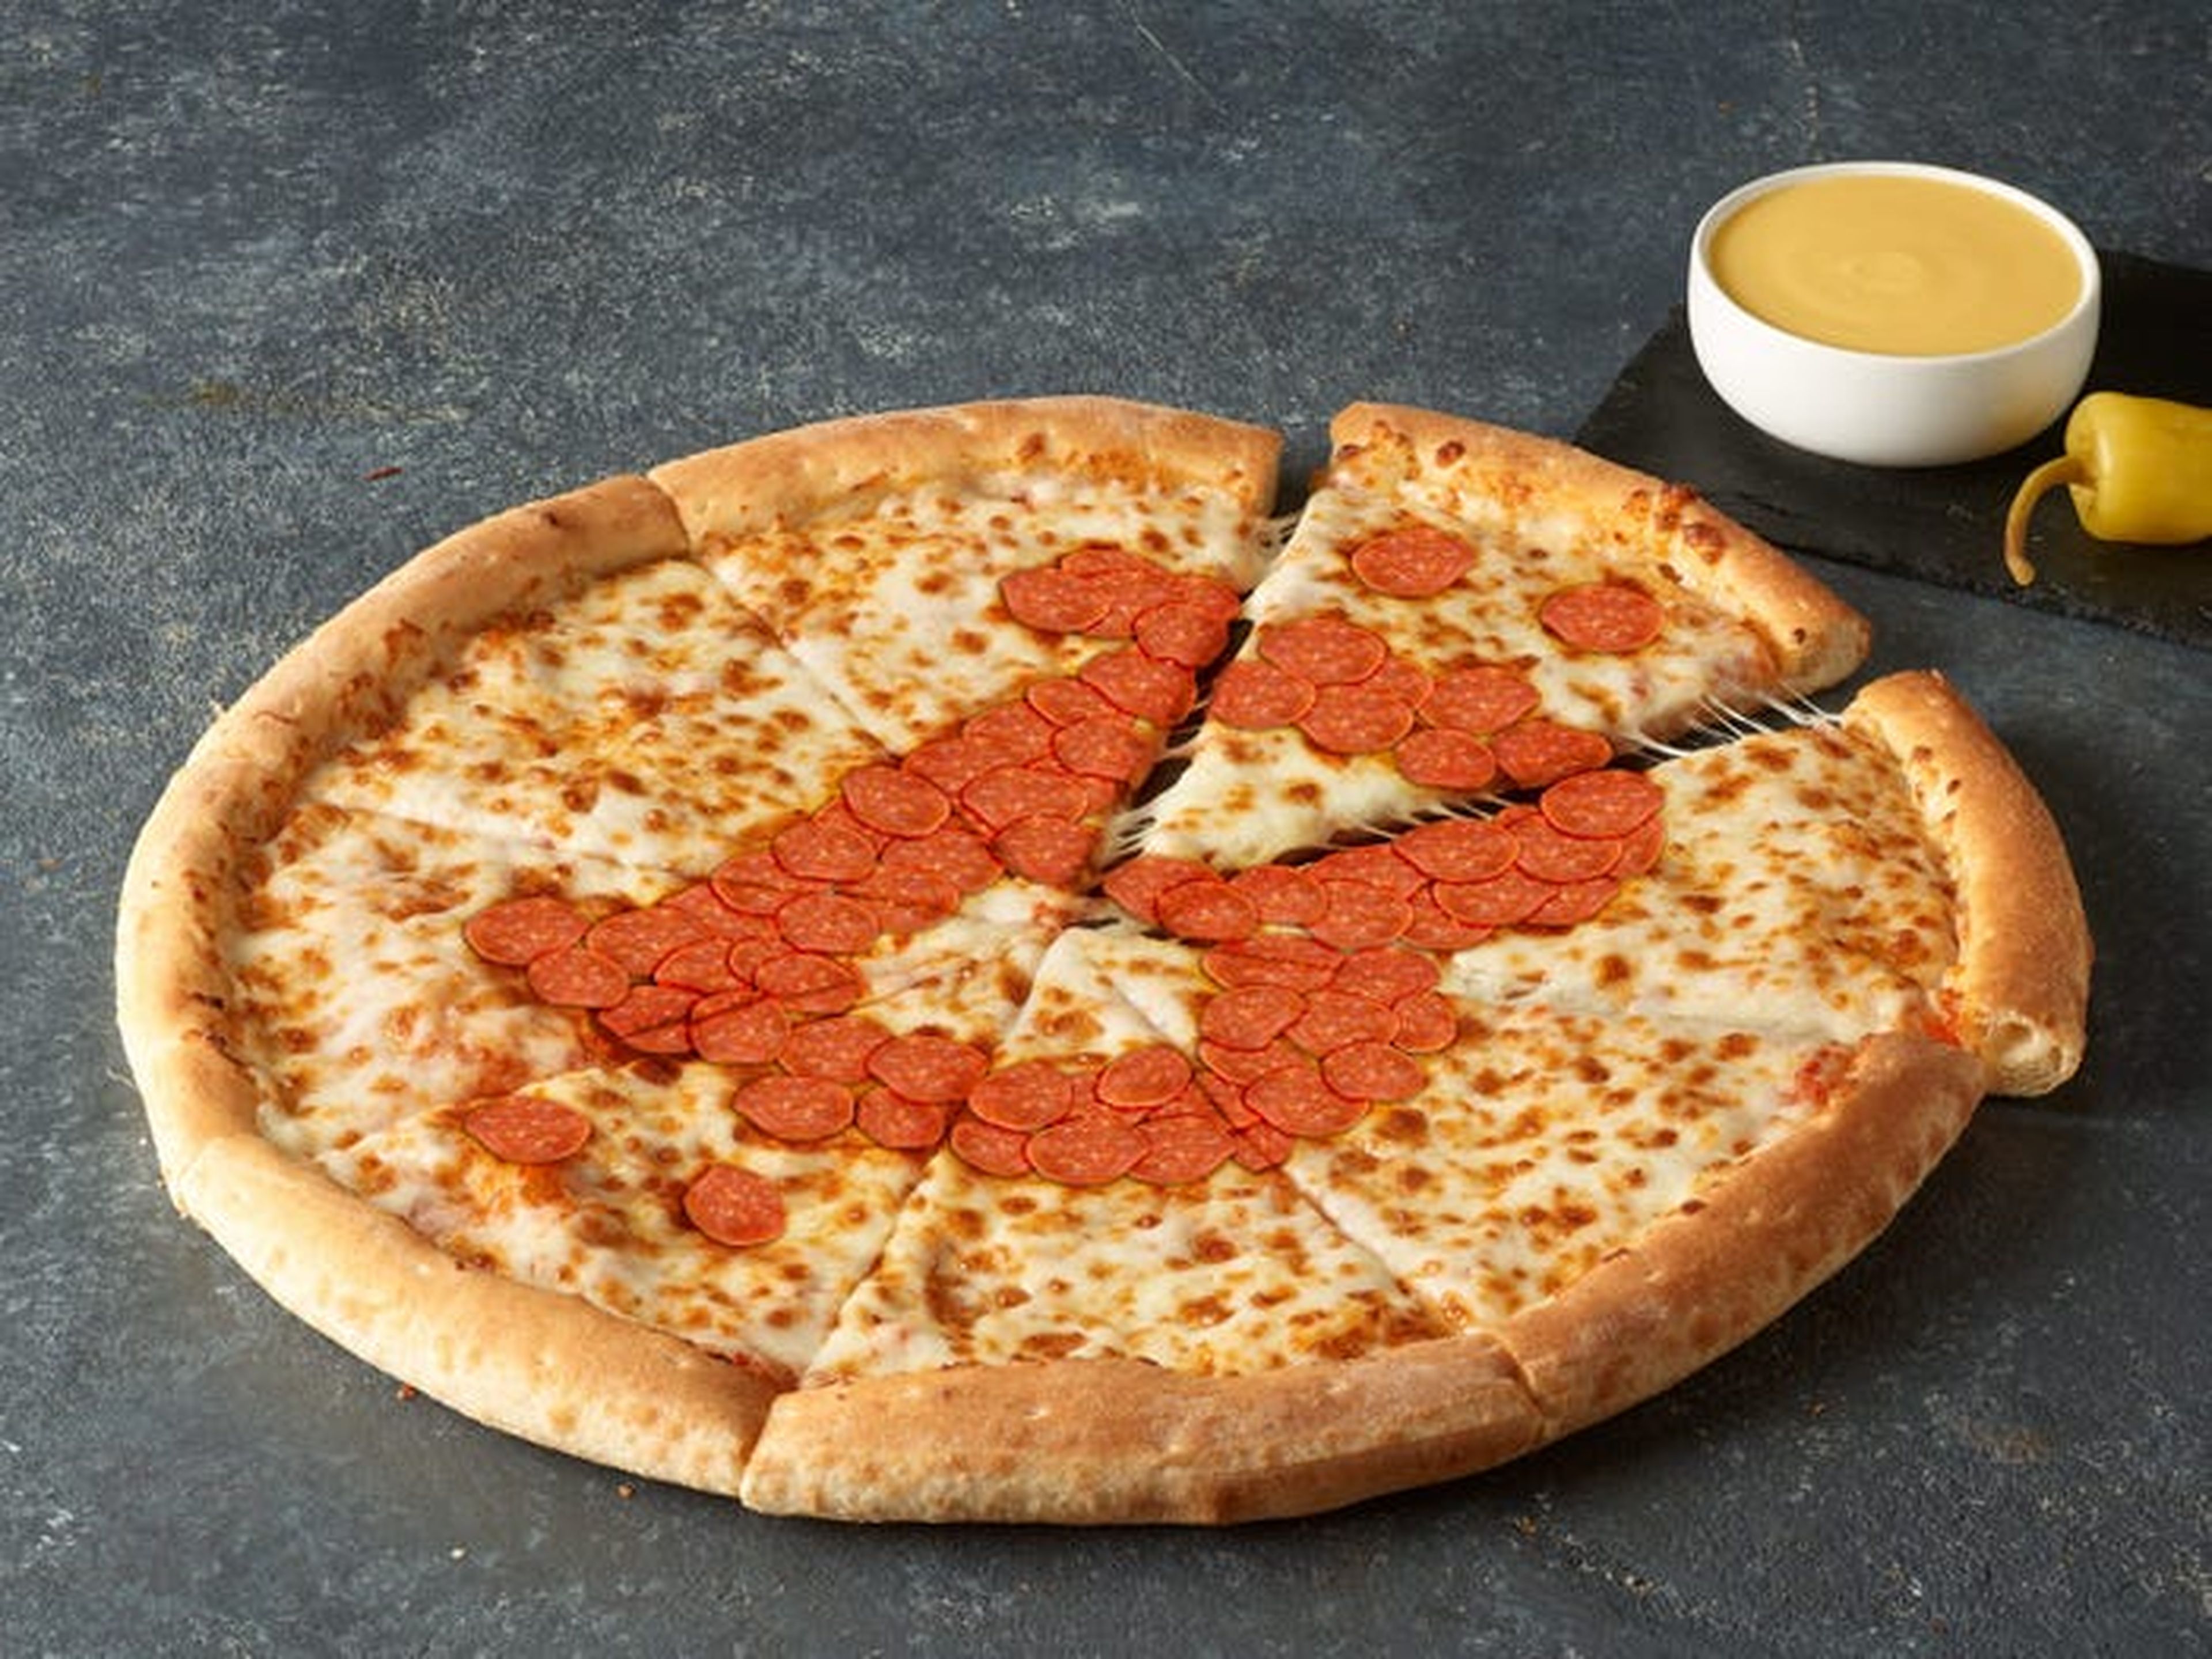 Los fans de las criptomonedas celebran la compra de pizza habilitada para bitcoins de Laszlo Hanyecz el 22 de mayo de cada año, conocido como el "Día de la pizza de Bitcoin".